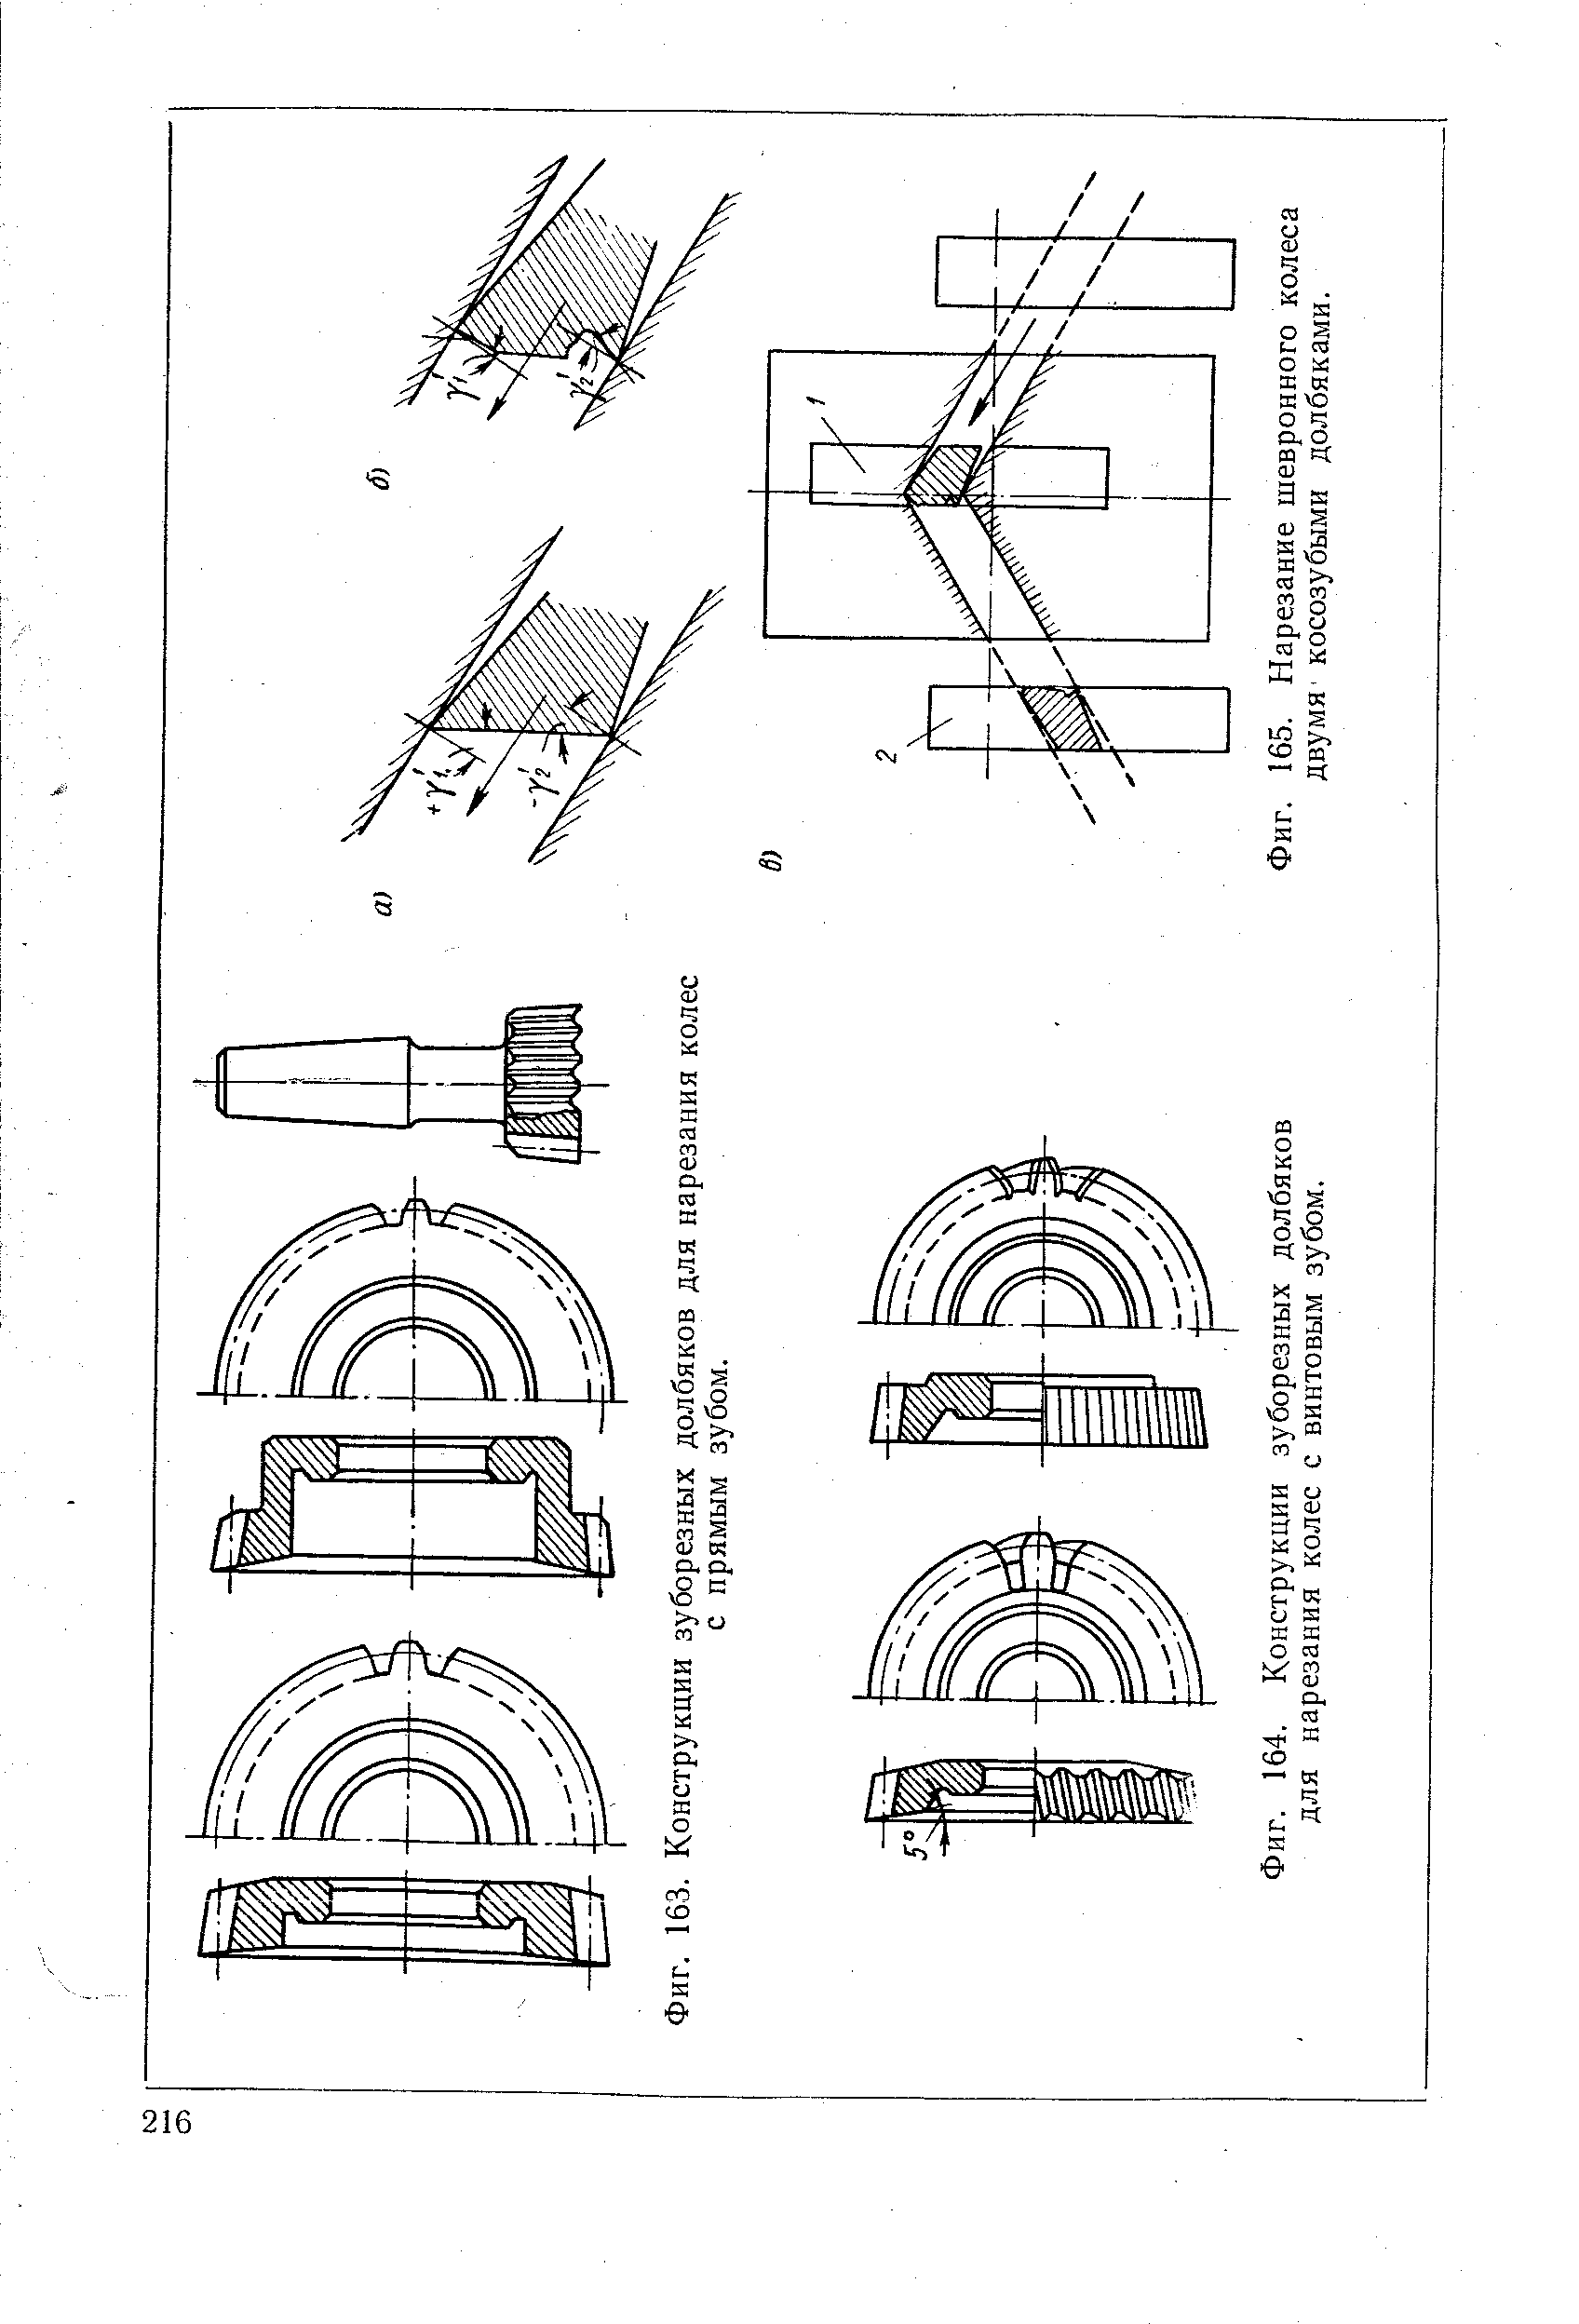 Фиг. 164. Конструкции зуборезных долбяков для нарезания колес с винтовым зубом.
